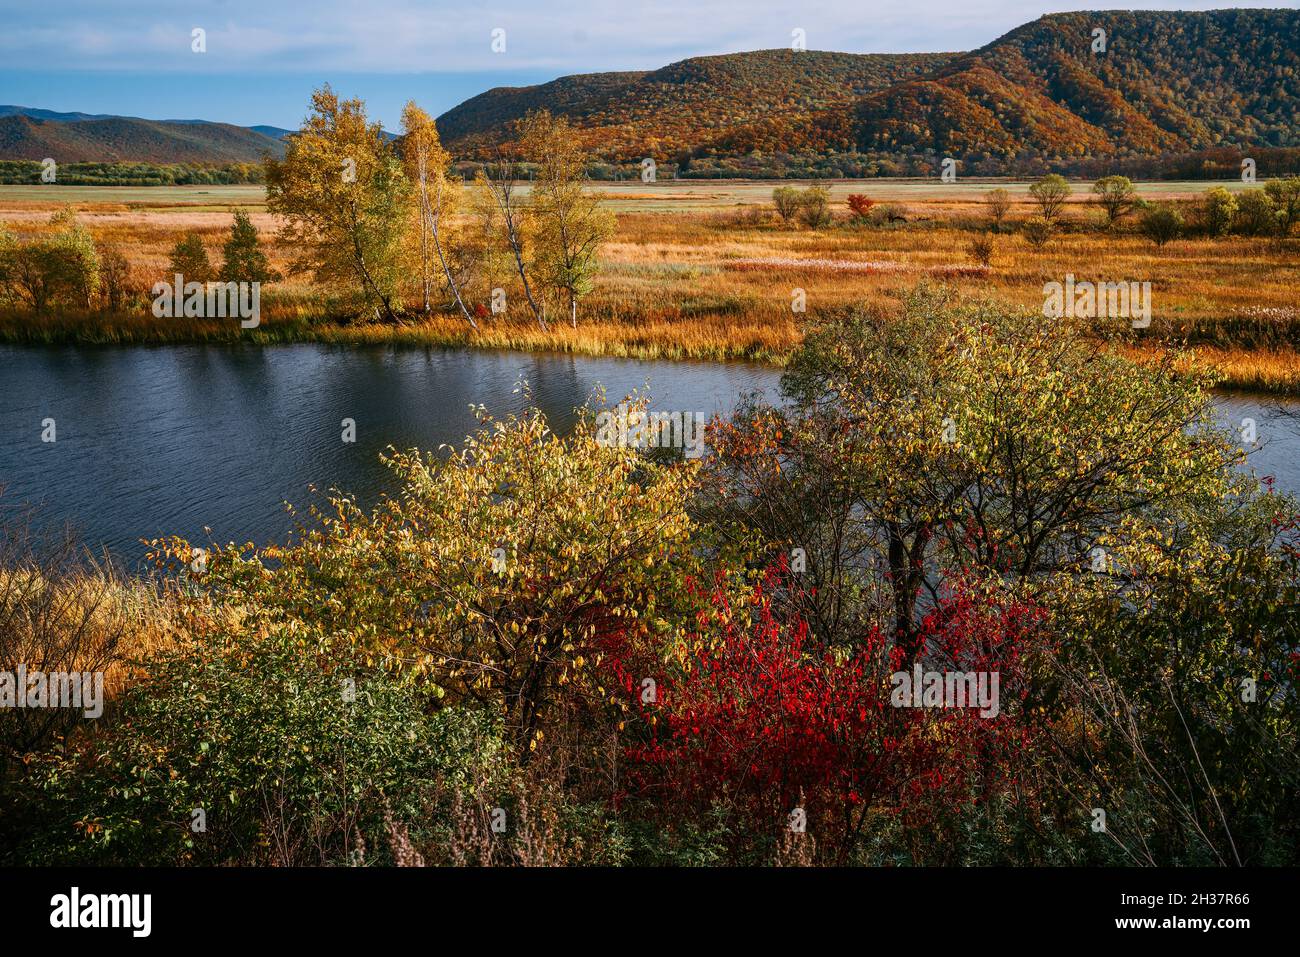 Rivière au début de l'automne, feuilles rouges, jaunes, orange et vertes Banque D'Images